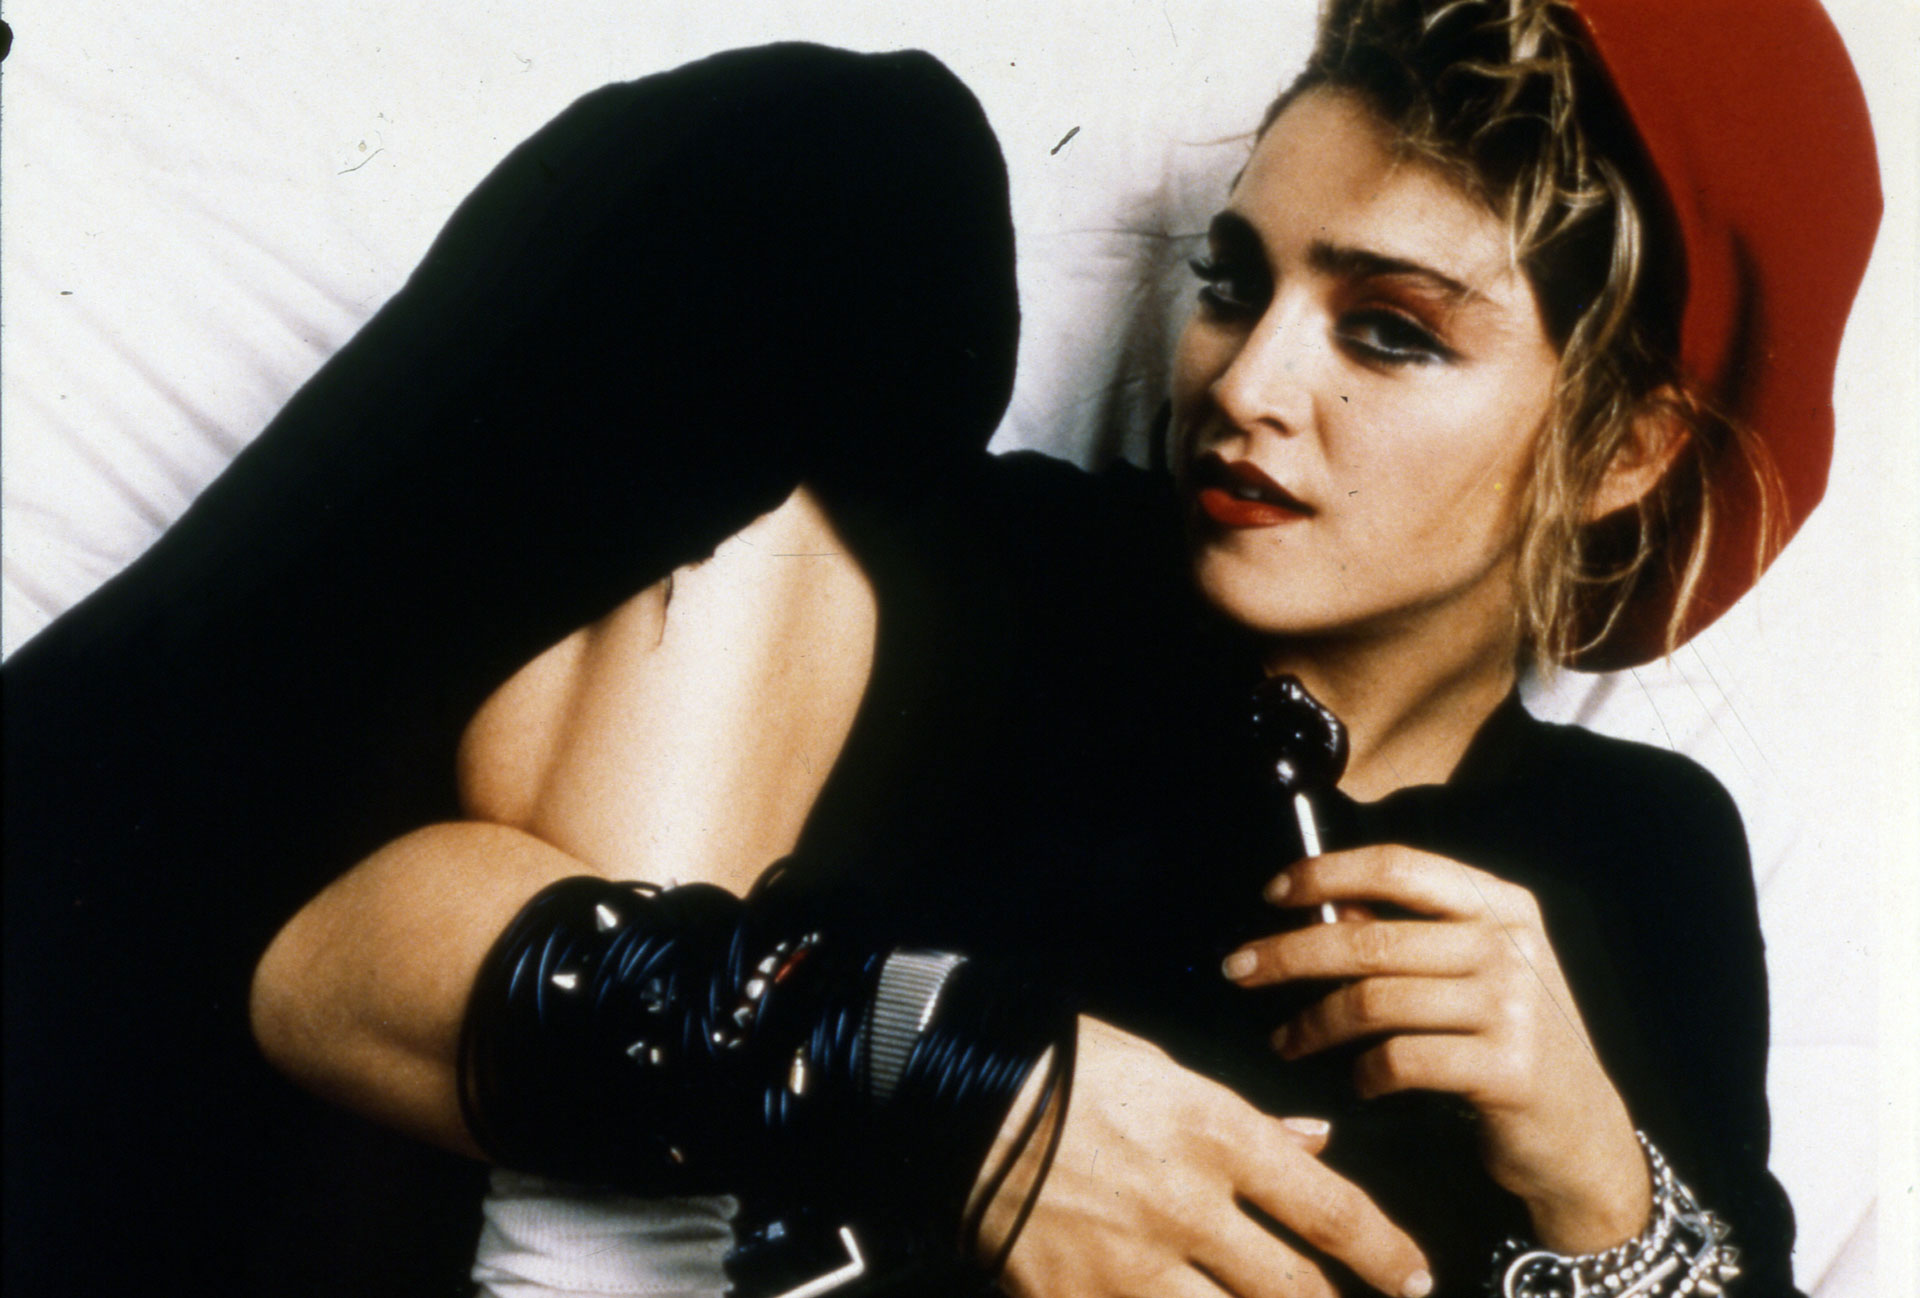 En la década del 80, Madonna ya era una estrella de la música que llamaba la atención con su look rebelde y transgresor. Madonna = icono de moda.